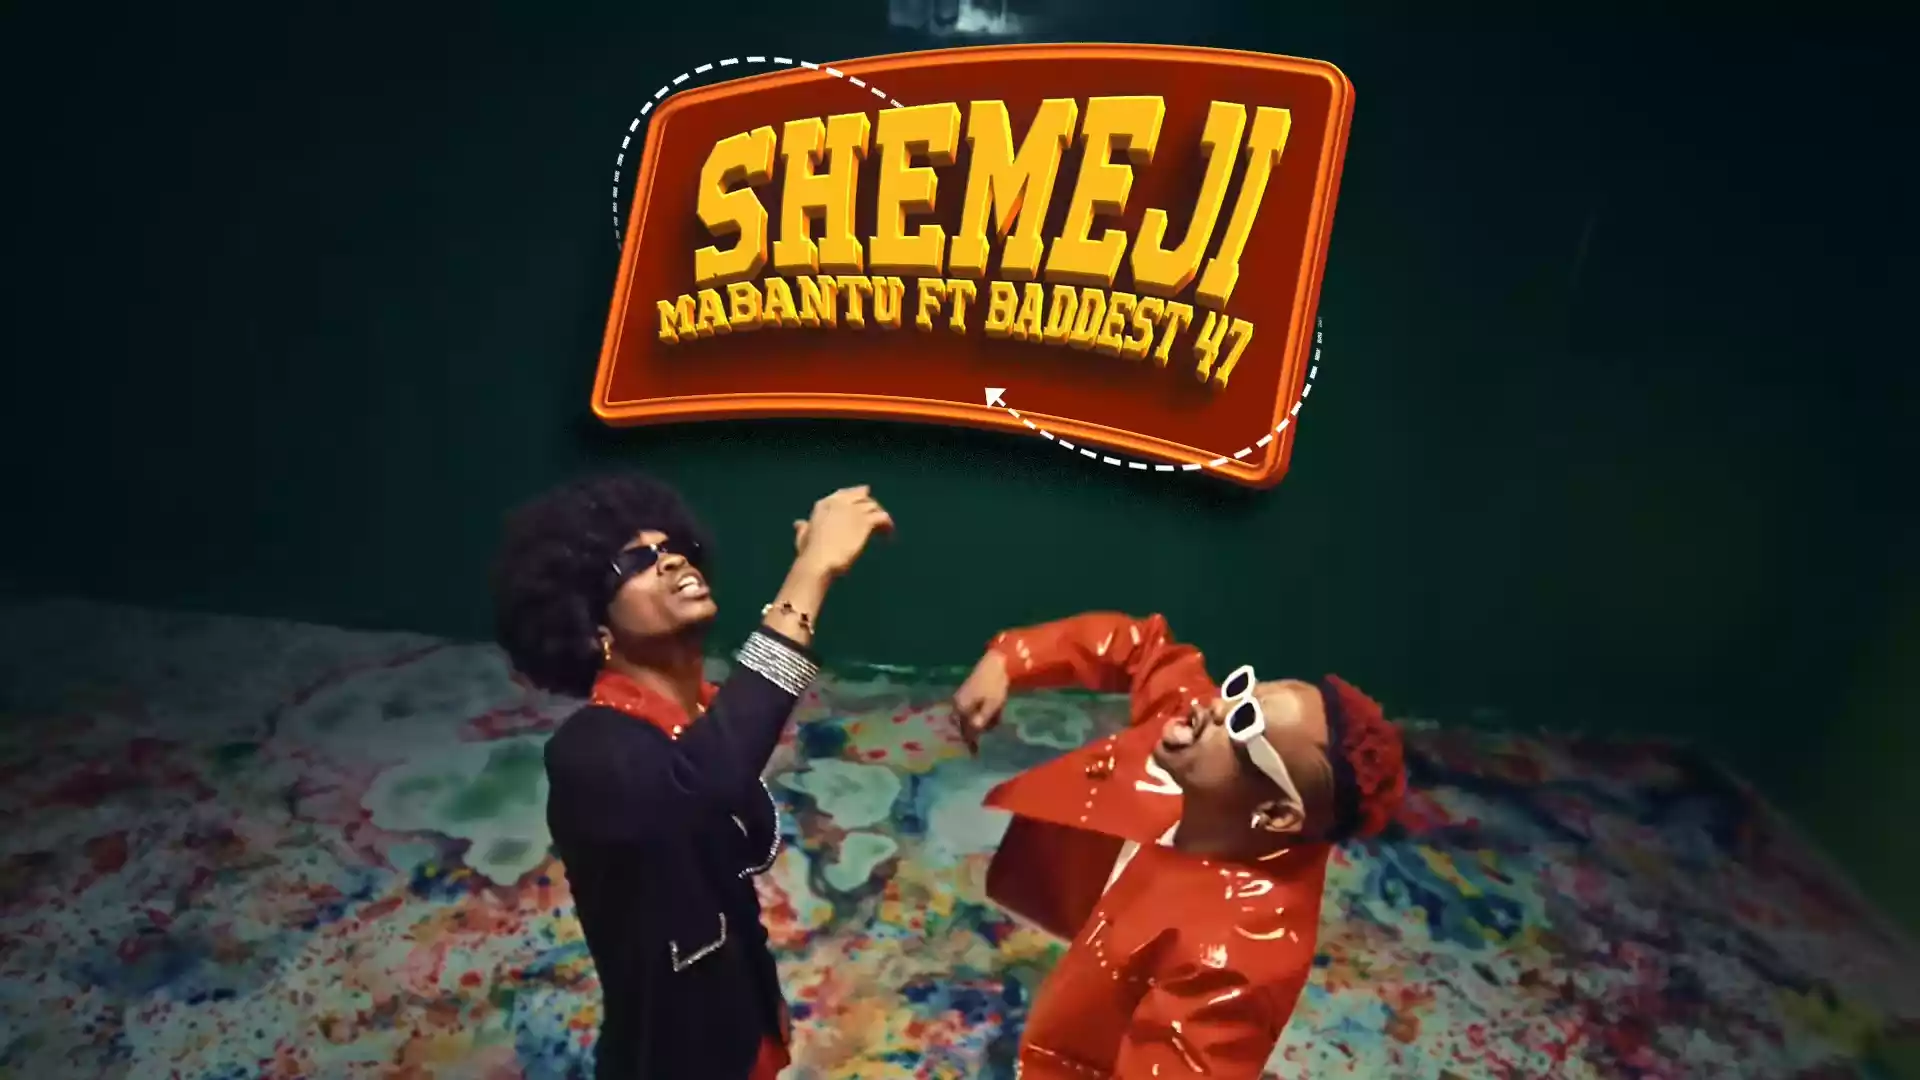 Mabantu ft Baddest 47 Shemeji Video Download